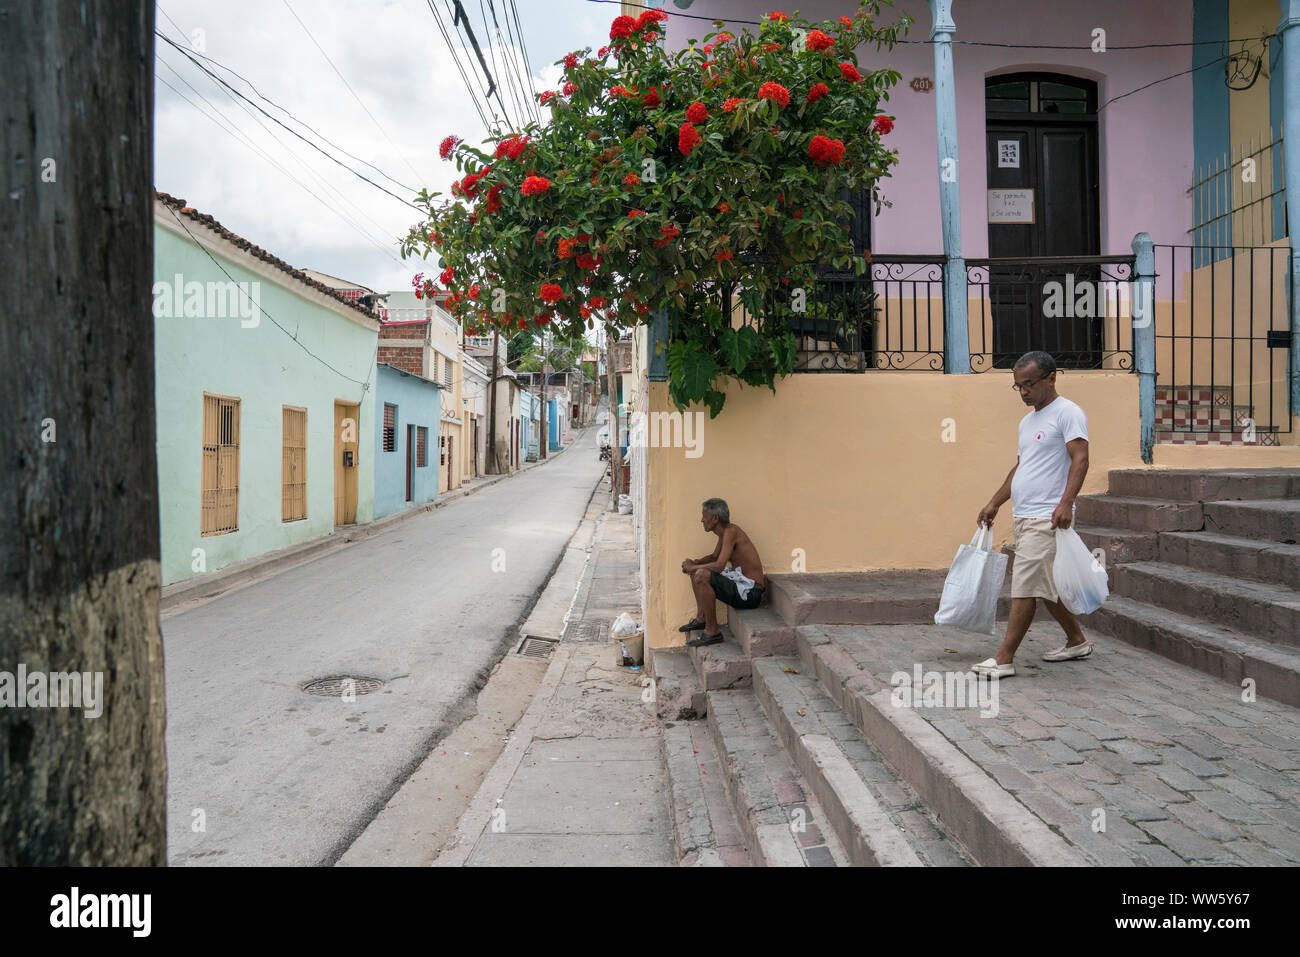 Un homme assis sur des escaliers à Santiago de Cuba, un autre descendant avec les achats, des maisons, un balcon avec des fleurs, un bâtiment de la rue avec des câbles de ligne Banque D'Images